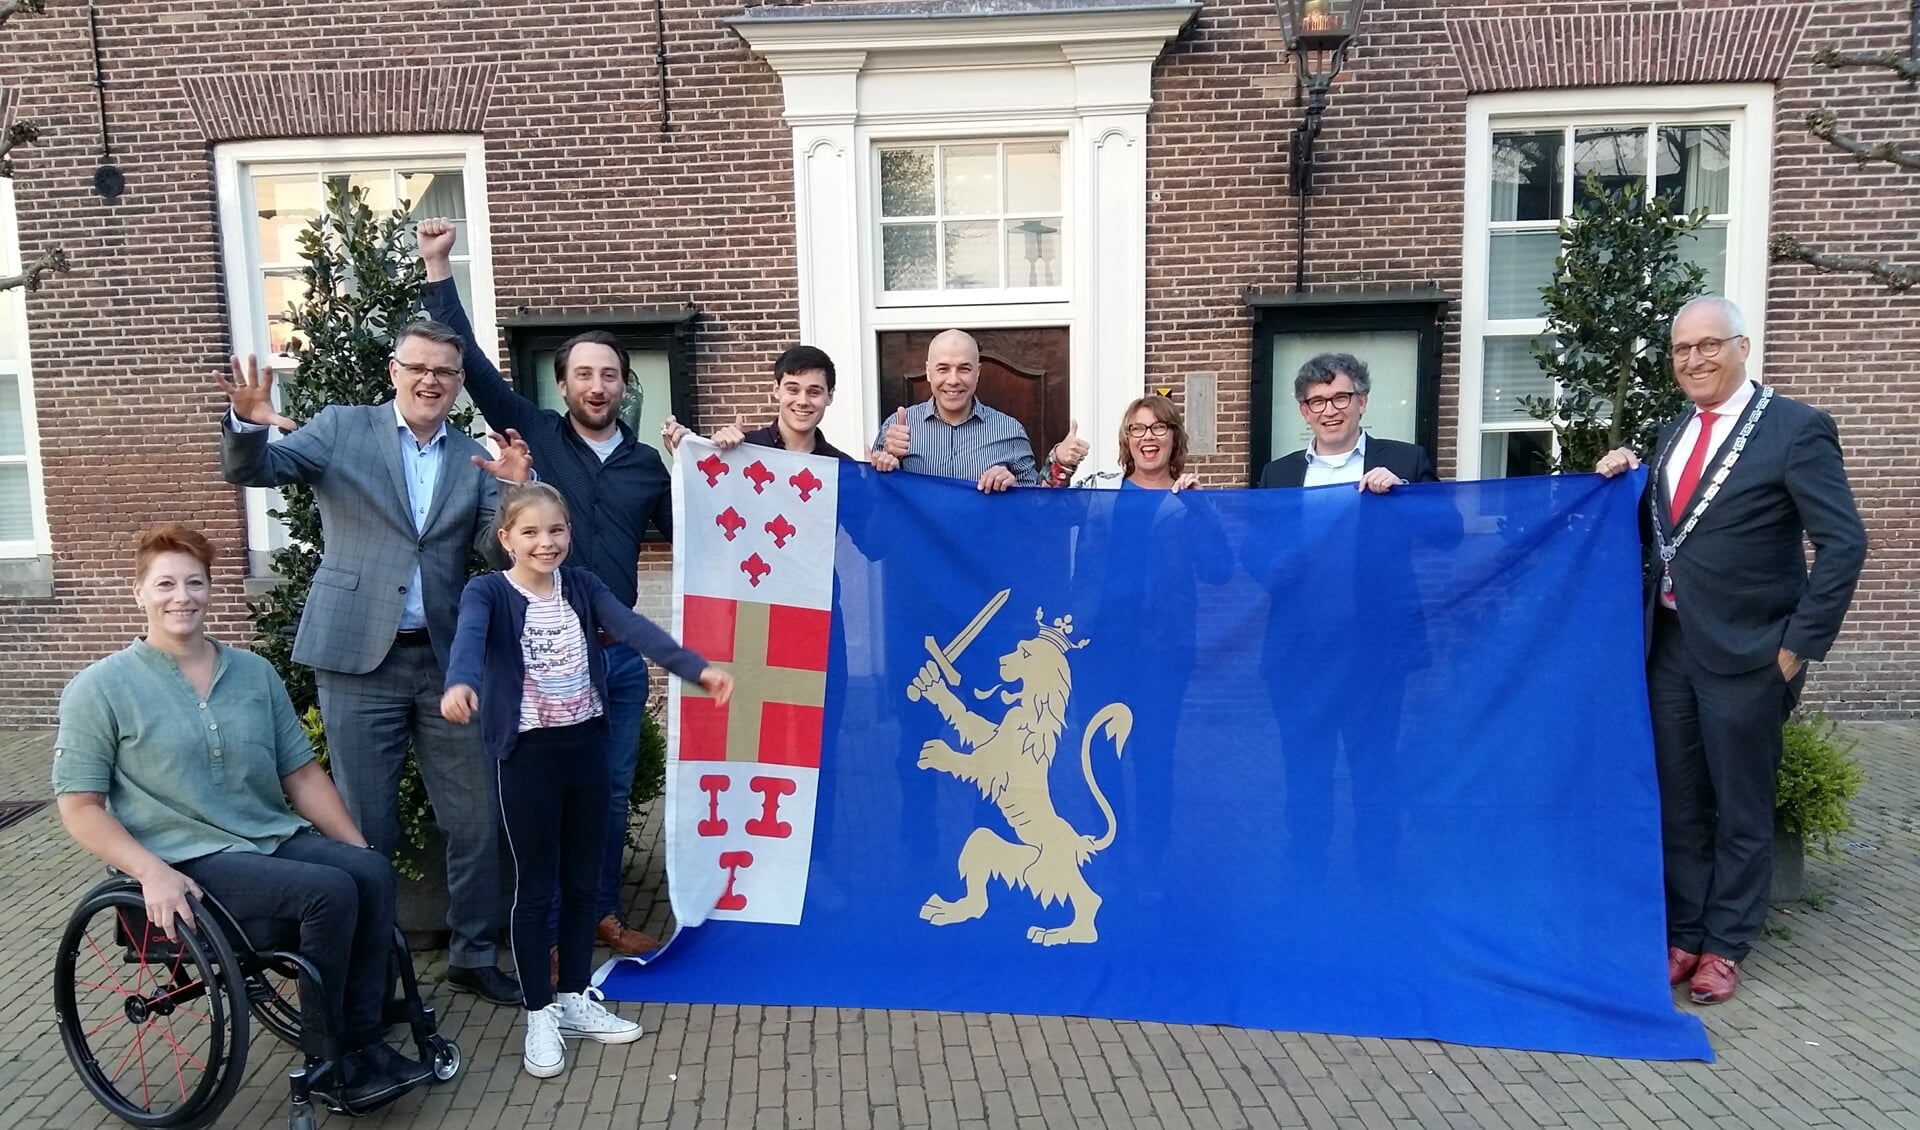 Het team dat Nijkerk vertegenwoordigt in Amersfoort. ,,Ze willen echt voor de winst gaan'', aldus de burgemeester.